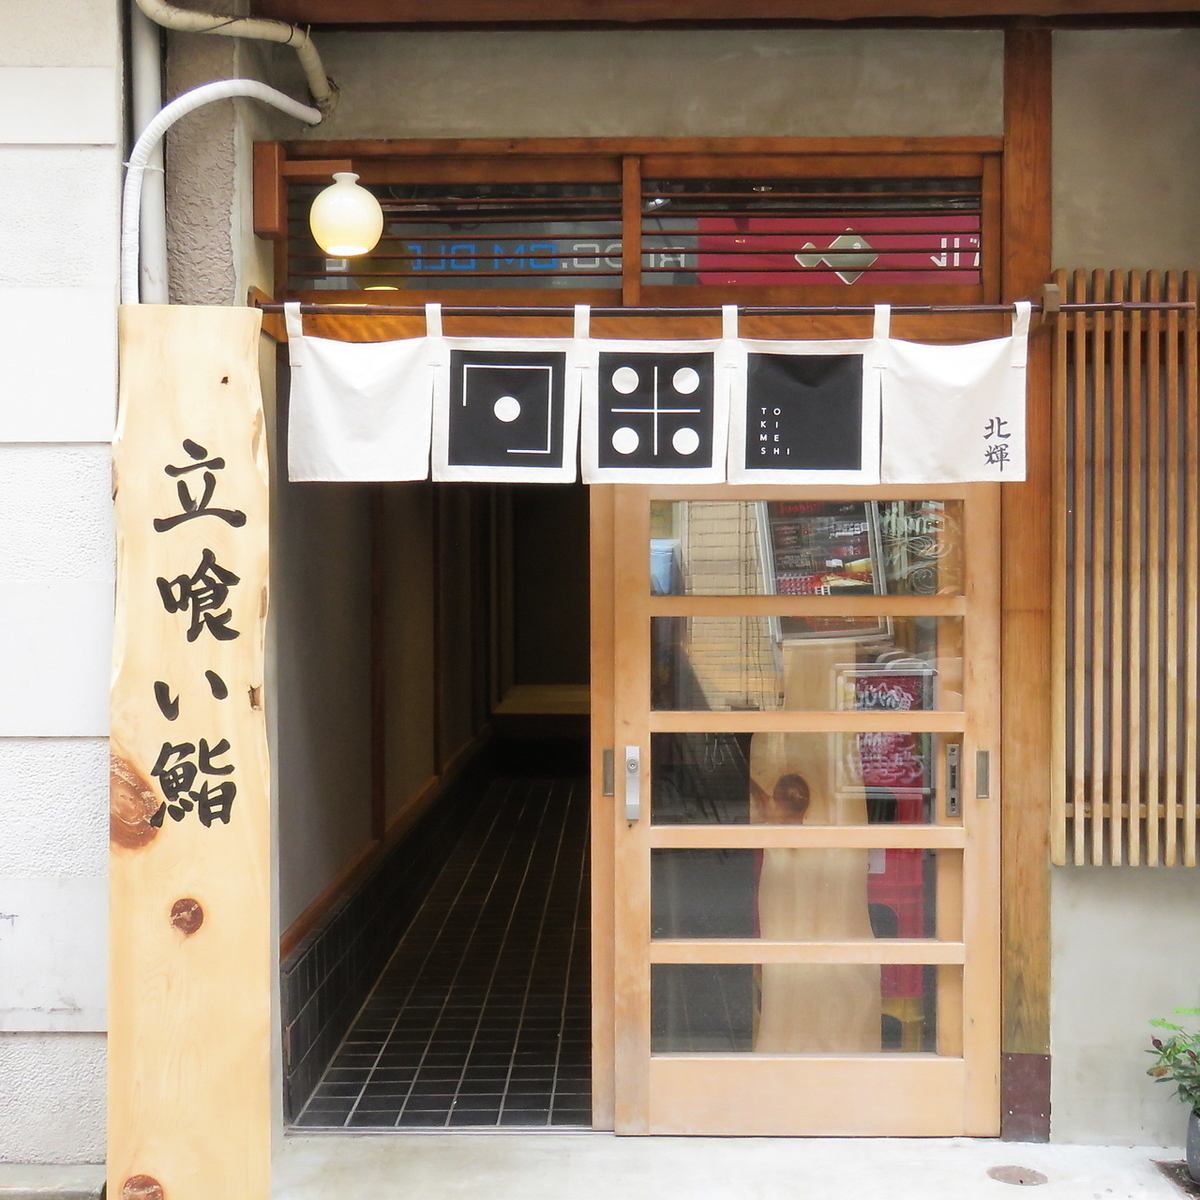 講究空間和美食的壽司店。在時尚空間用餐的成熟握把。